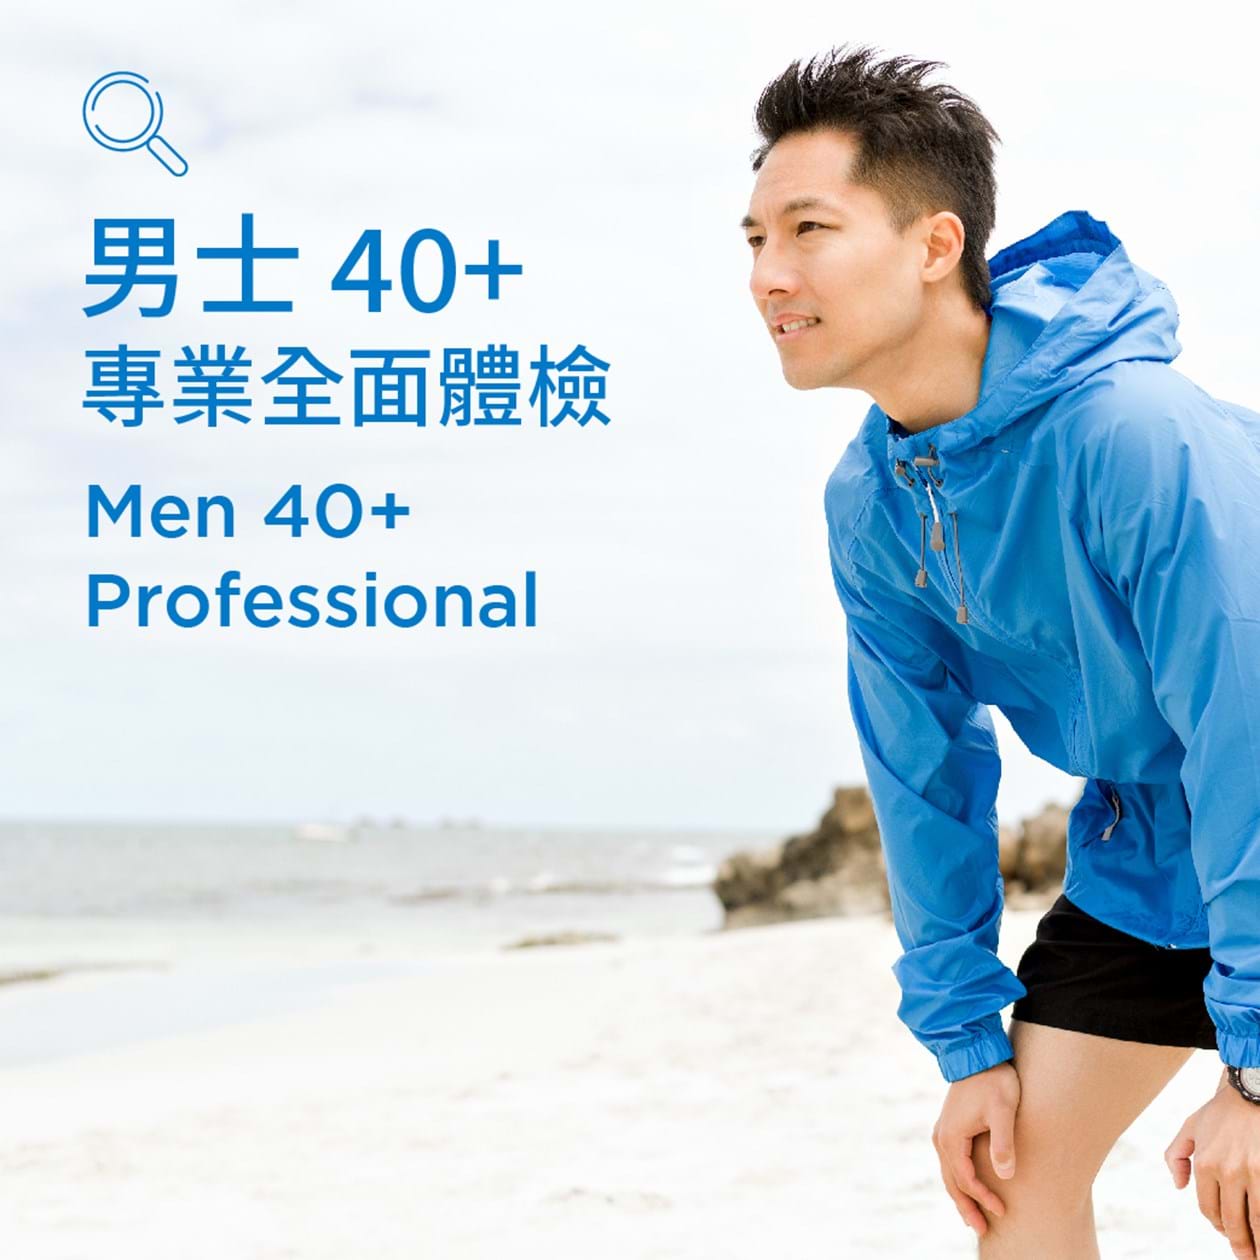 男士40+專業體檢